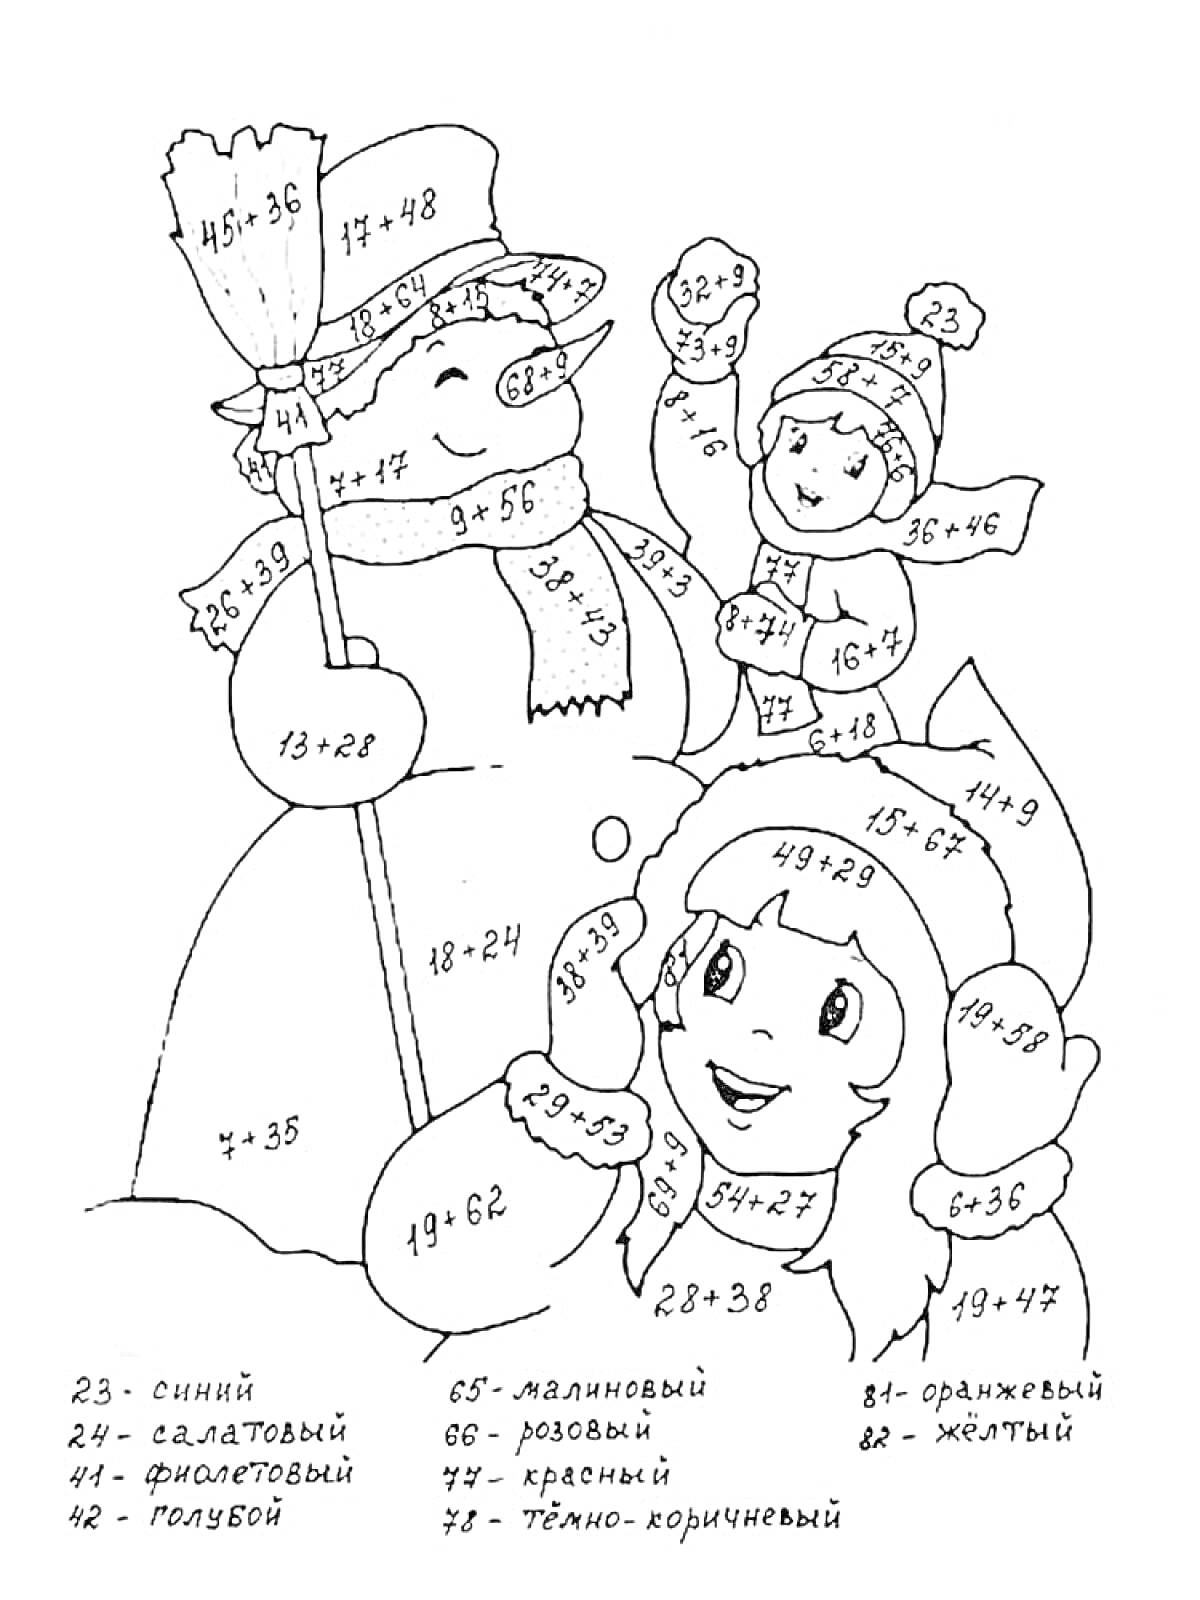 Раскраска зимней сцены с примерами на сложение (снеговик и дети)